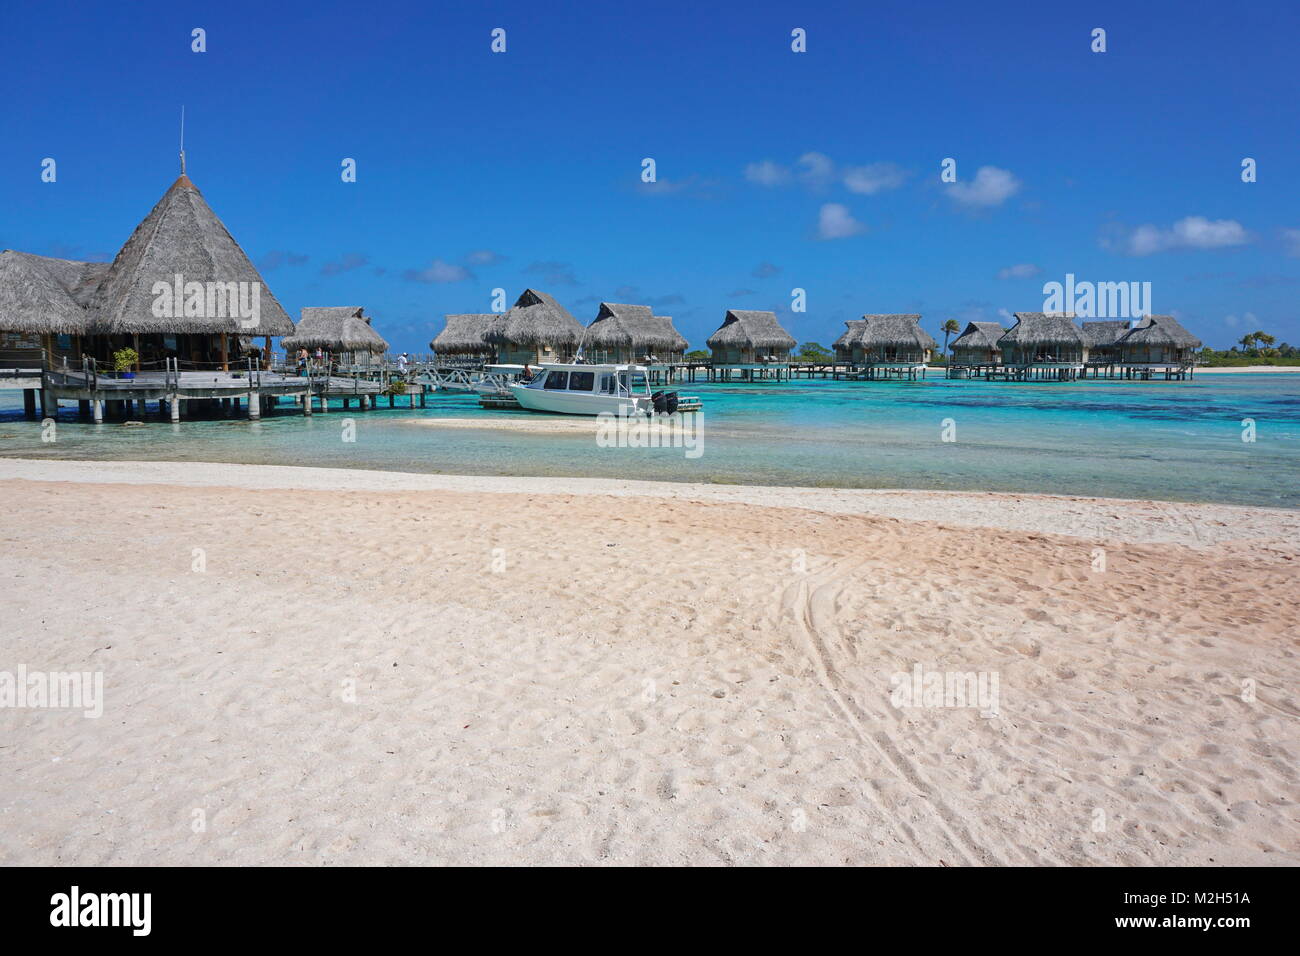 Tropical resort, plage de sable avec des bungalows au toit de chaume au-dessus de l'eau dans le lagon, l'atoll de Tikehau, Tuamotu, Polynésie Française, océan Pacifique, Océanie Banque D'Images